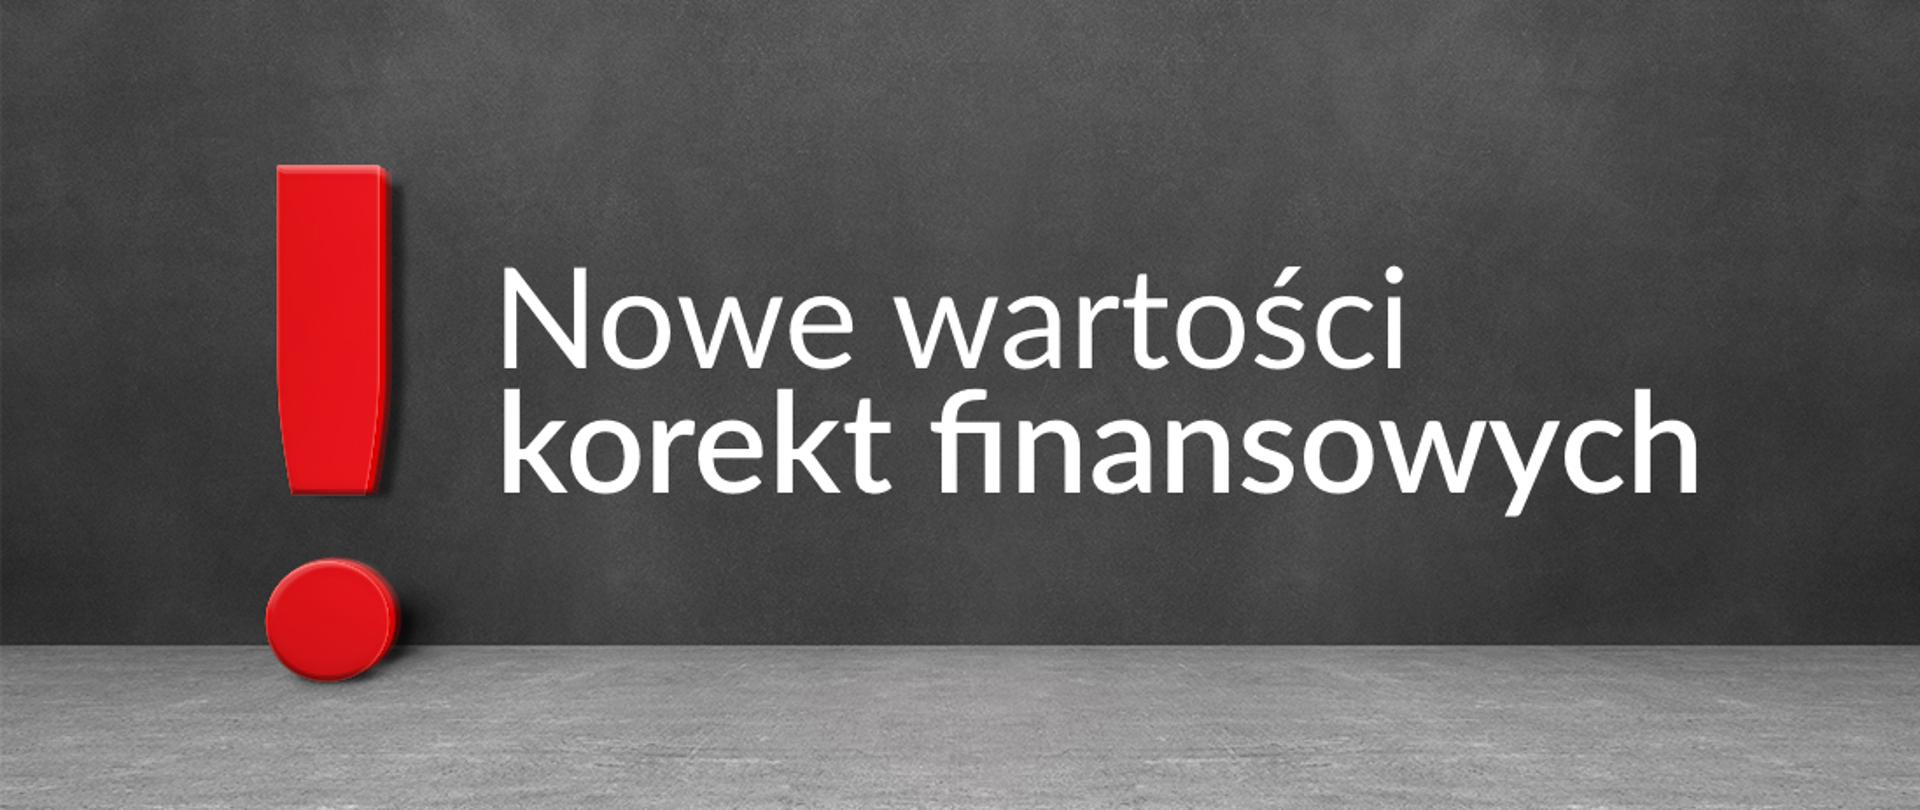 Baner o treści: "Nowe wartości korekt finansowych" przedstawiający czerwony wykrzyknik na marmurowym tle.